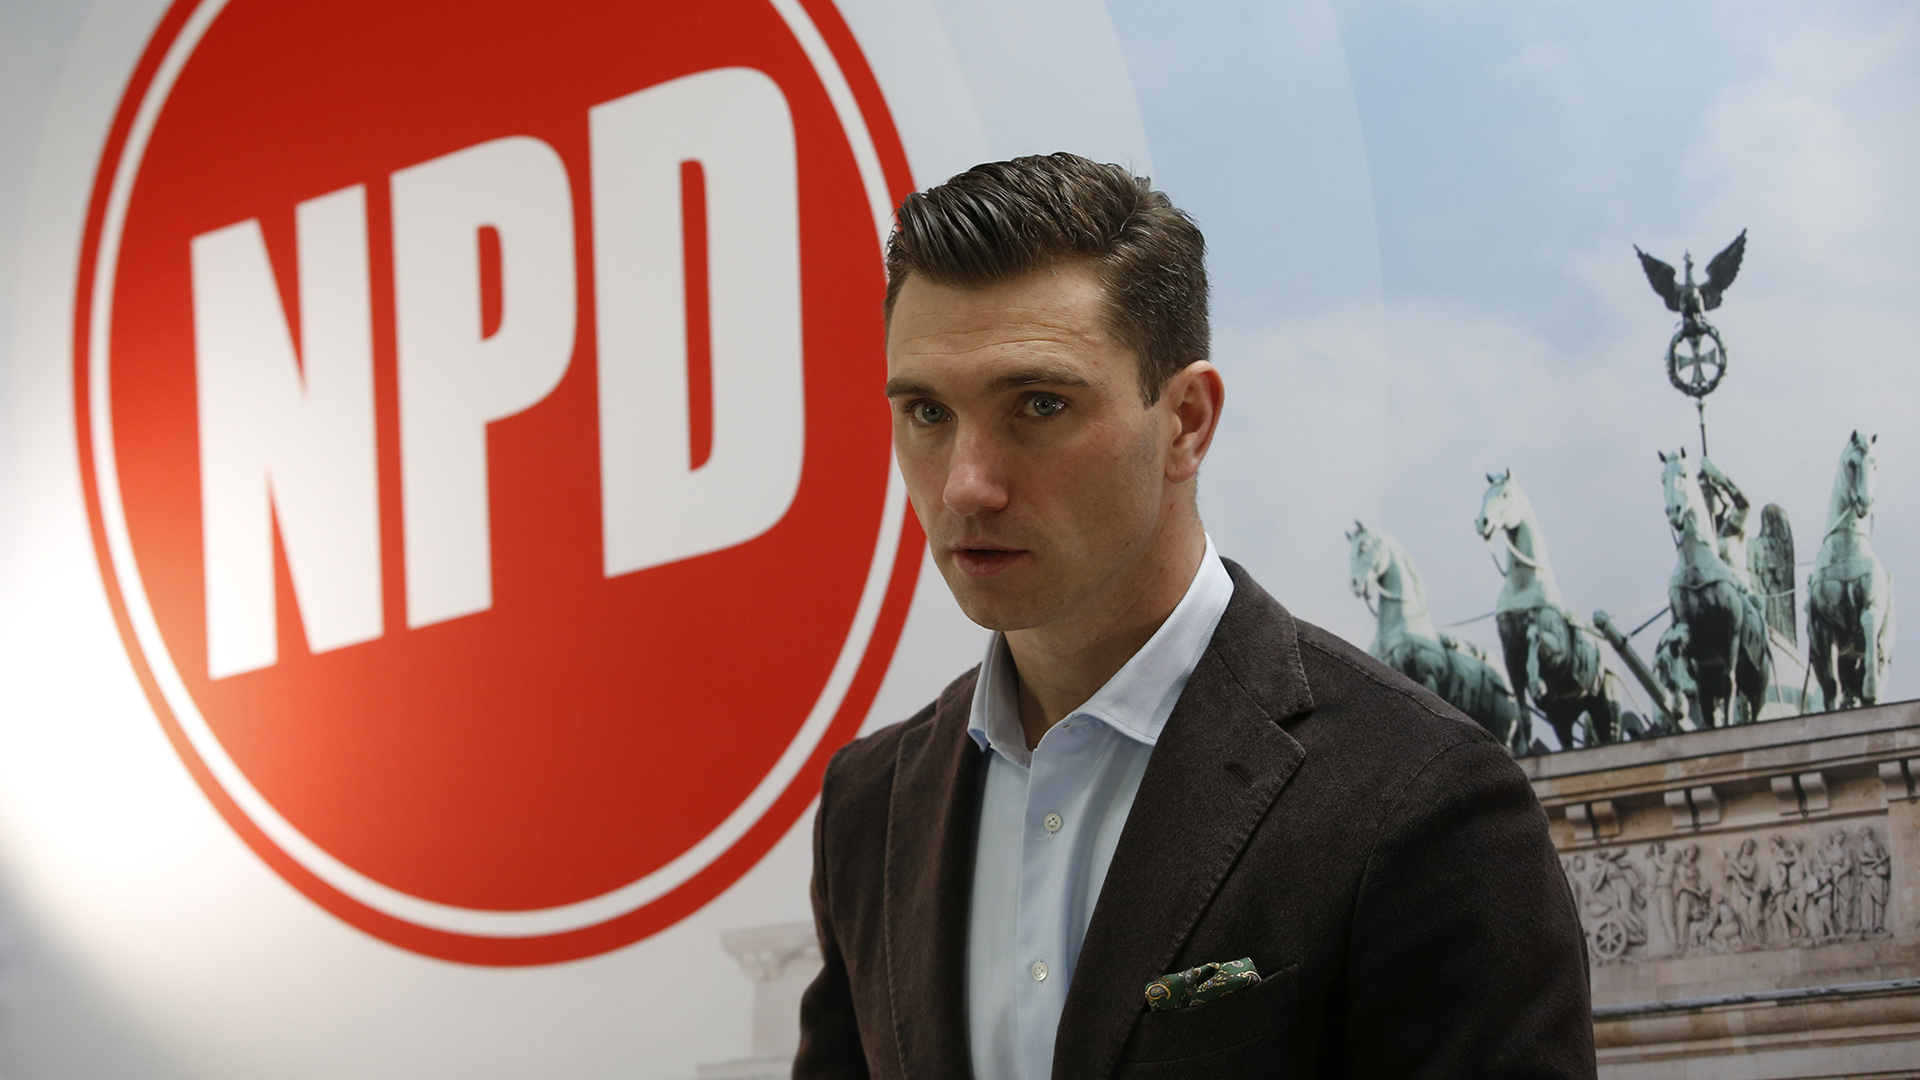 Berlín anuncia una iniciativa para cortar fondos públicos al partido neonazi NPD